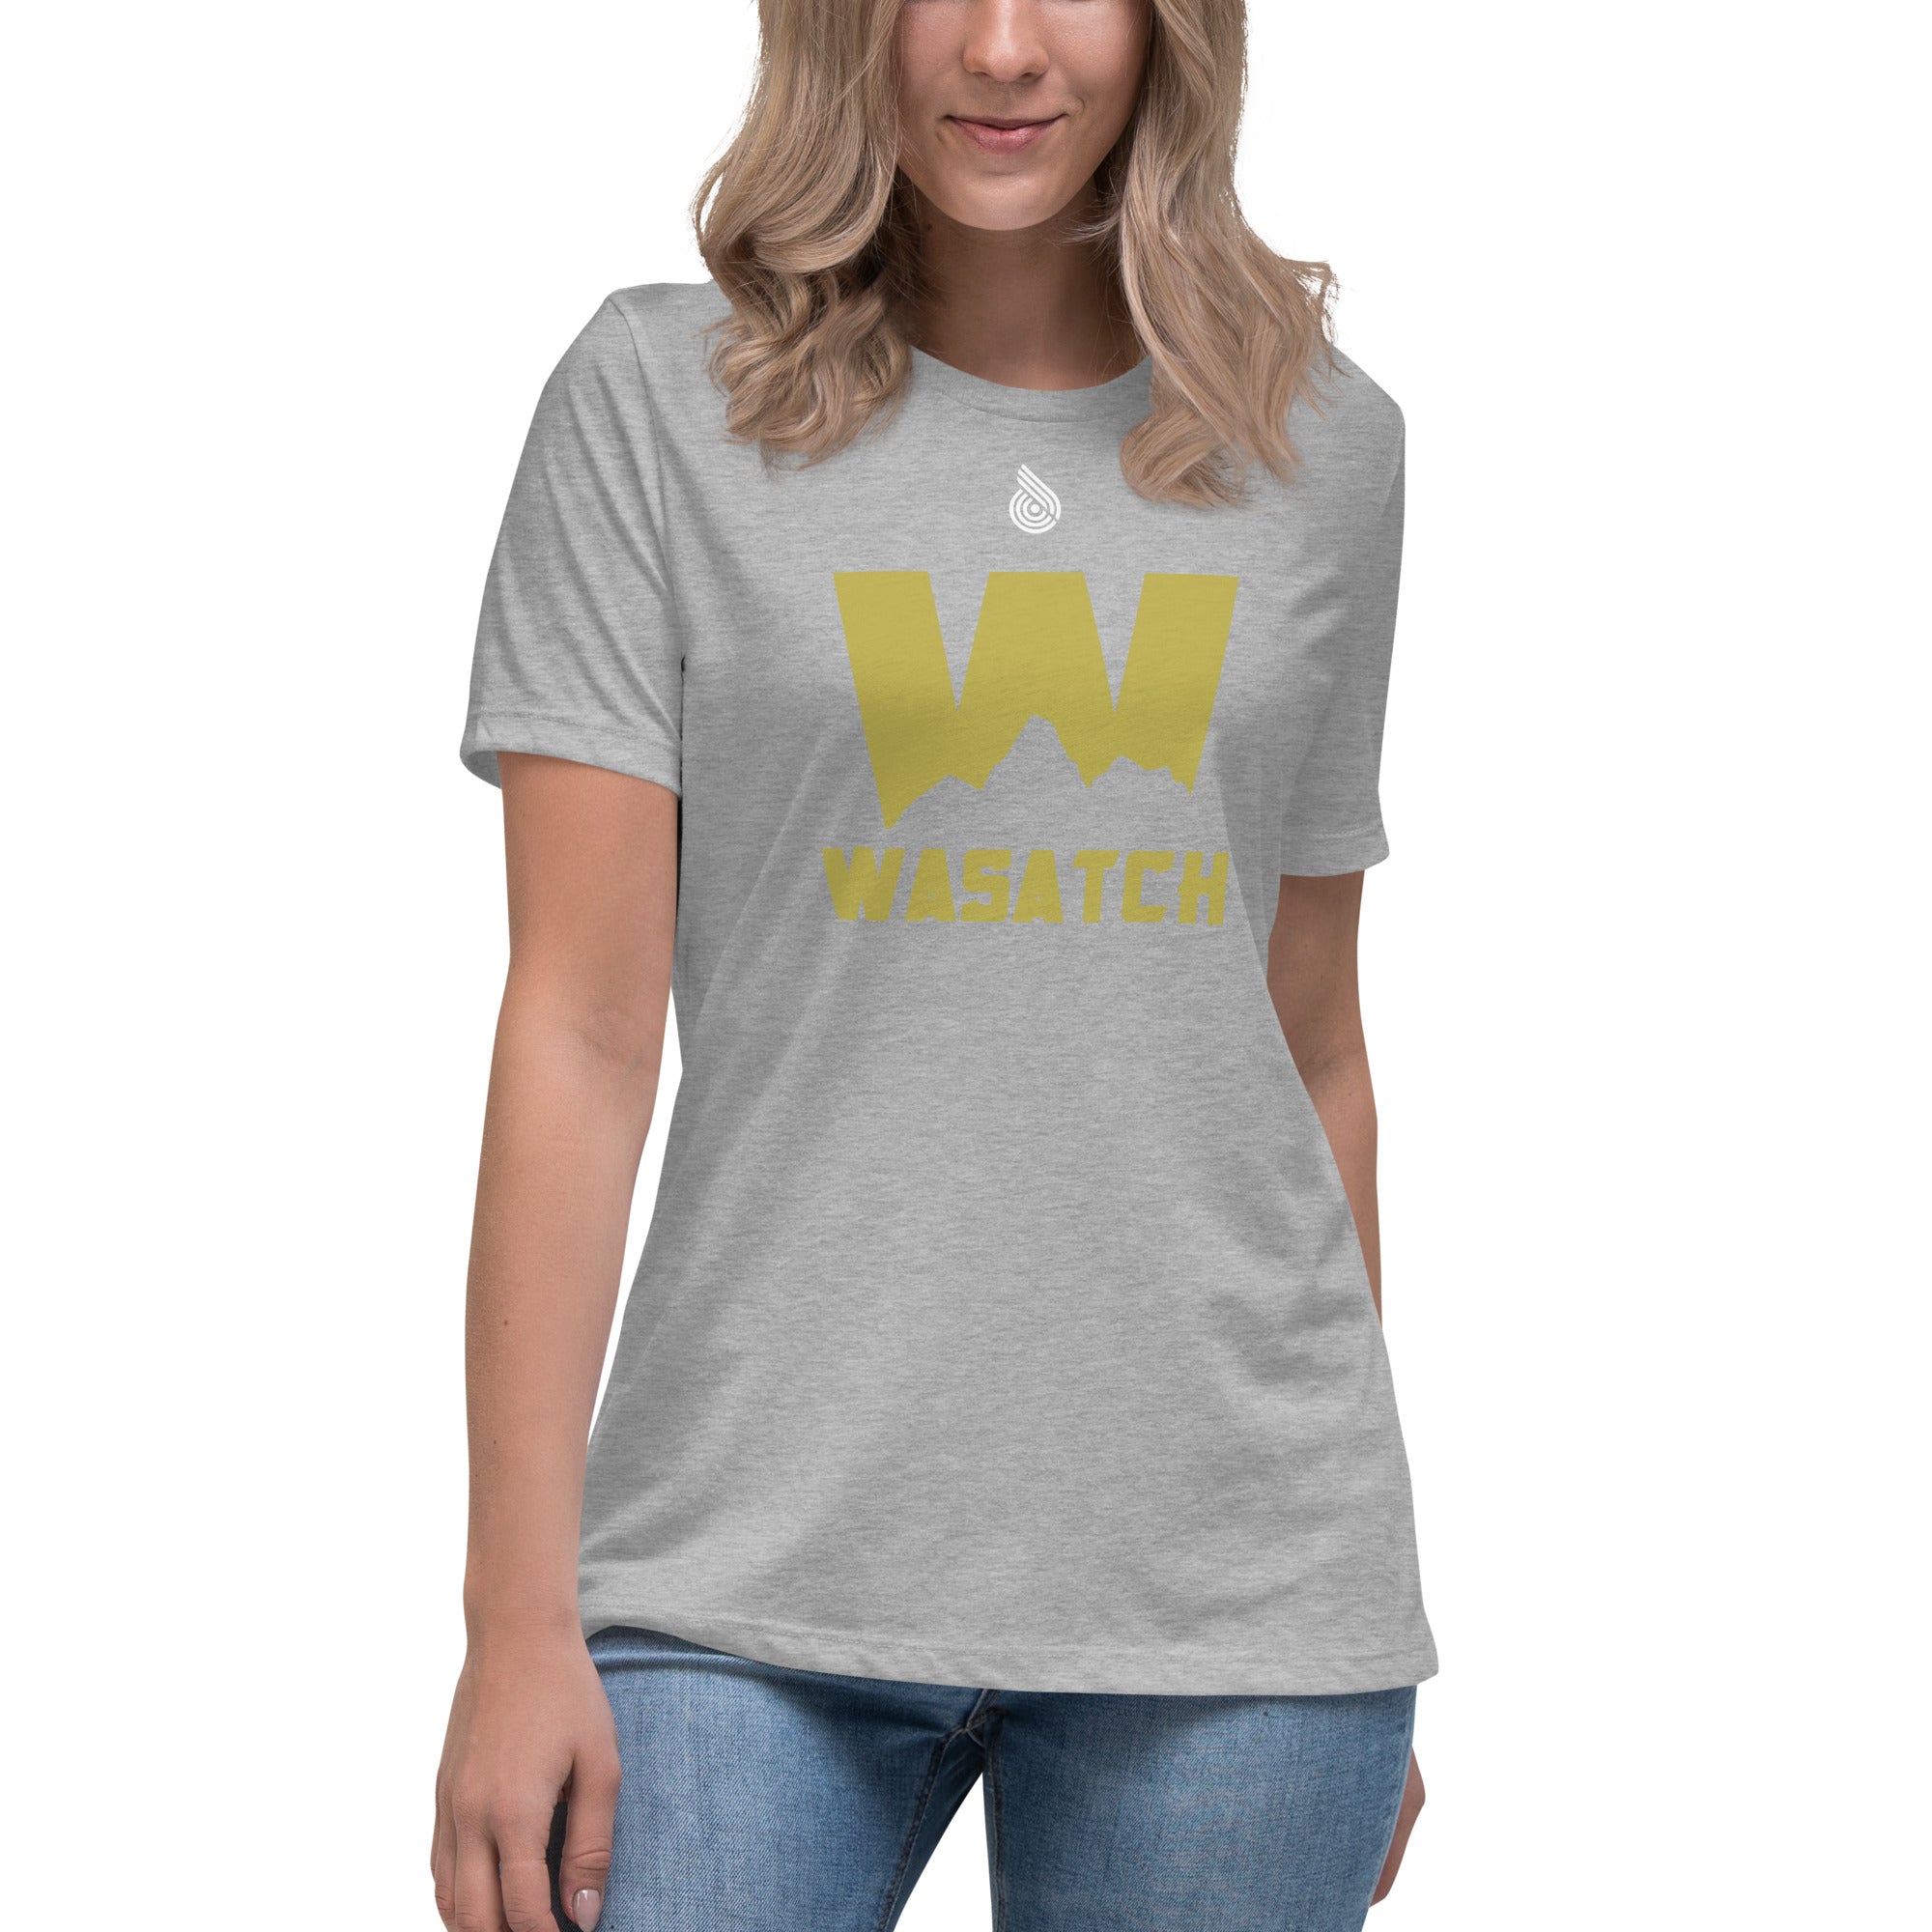 Wasatch Women's Relaxed T-Shirt